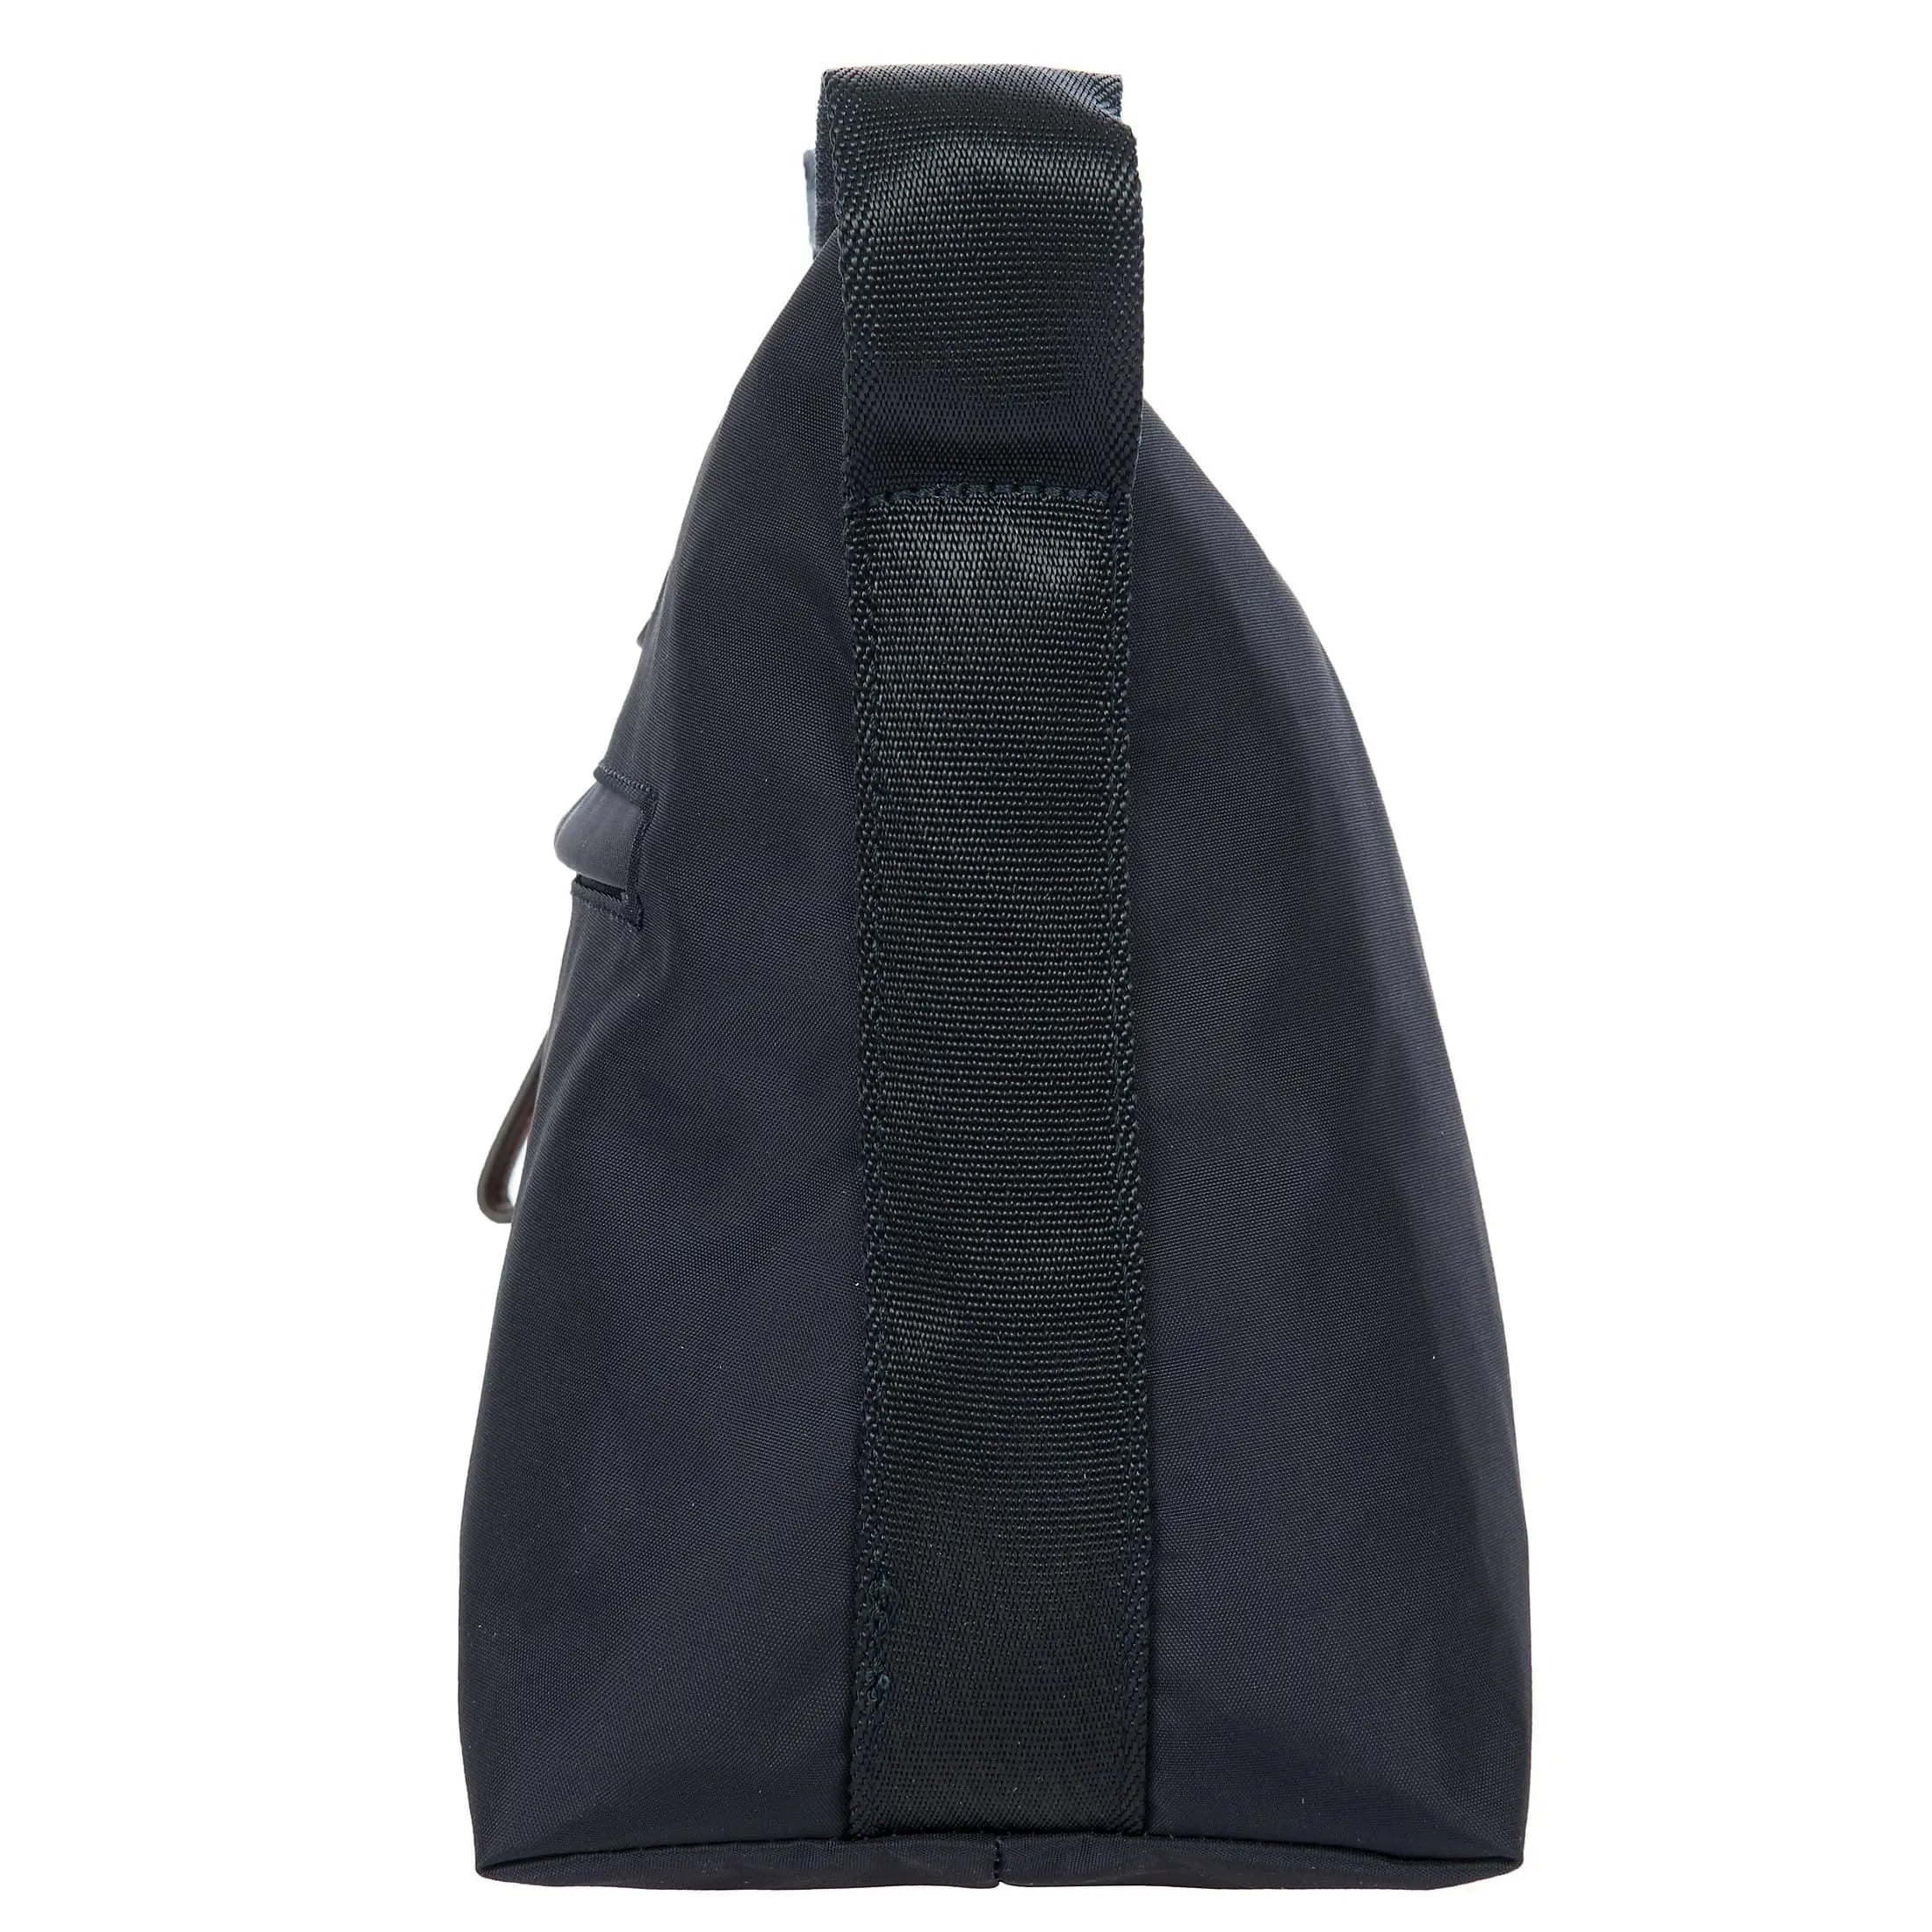 Brics X-Bag shoulder bag 25 cm - Geranium